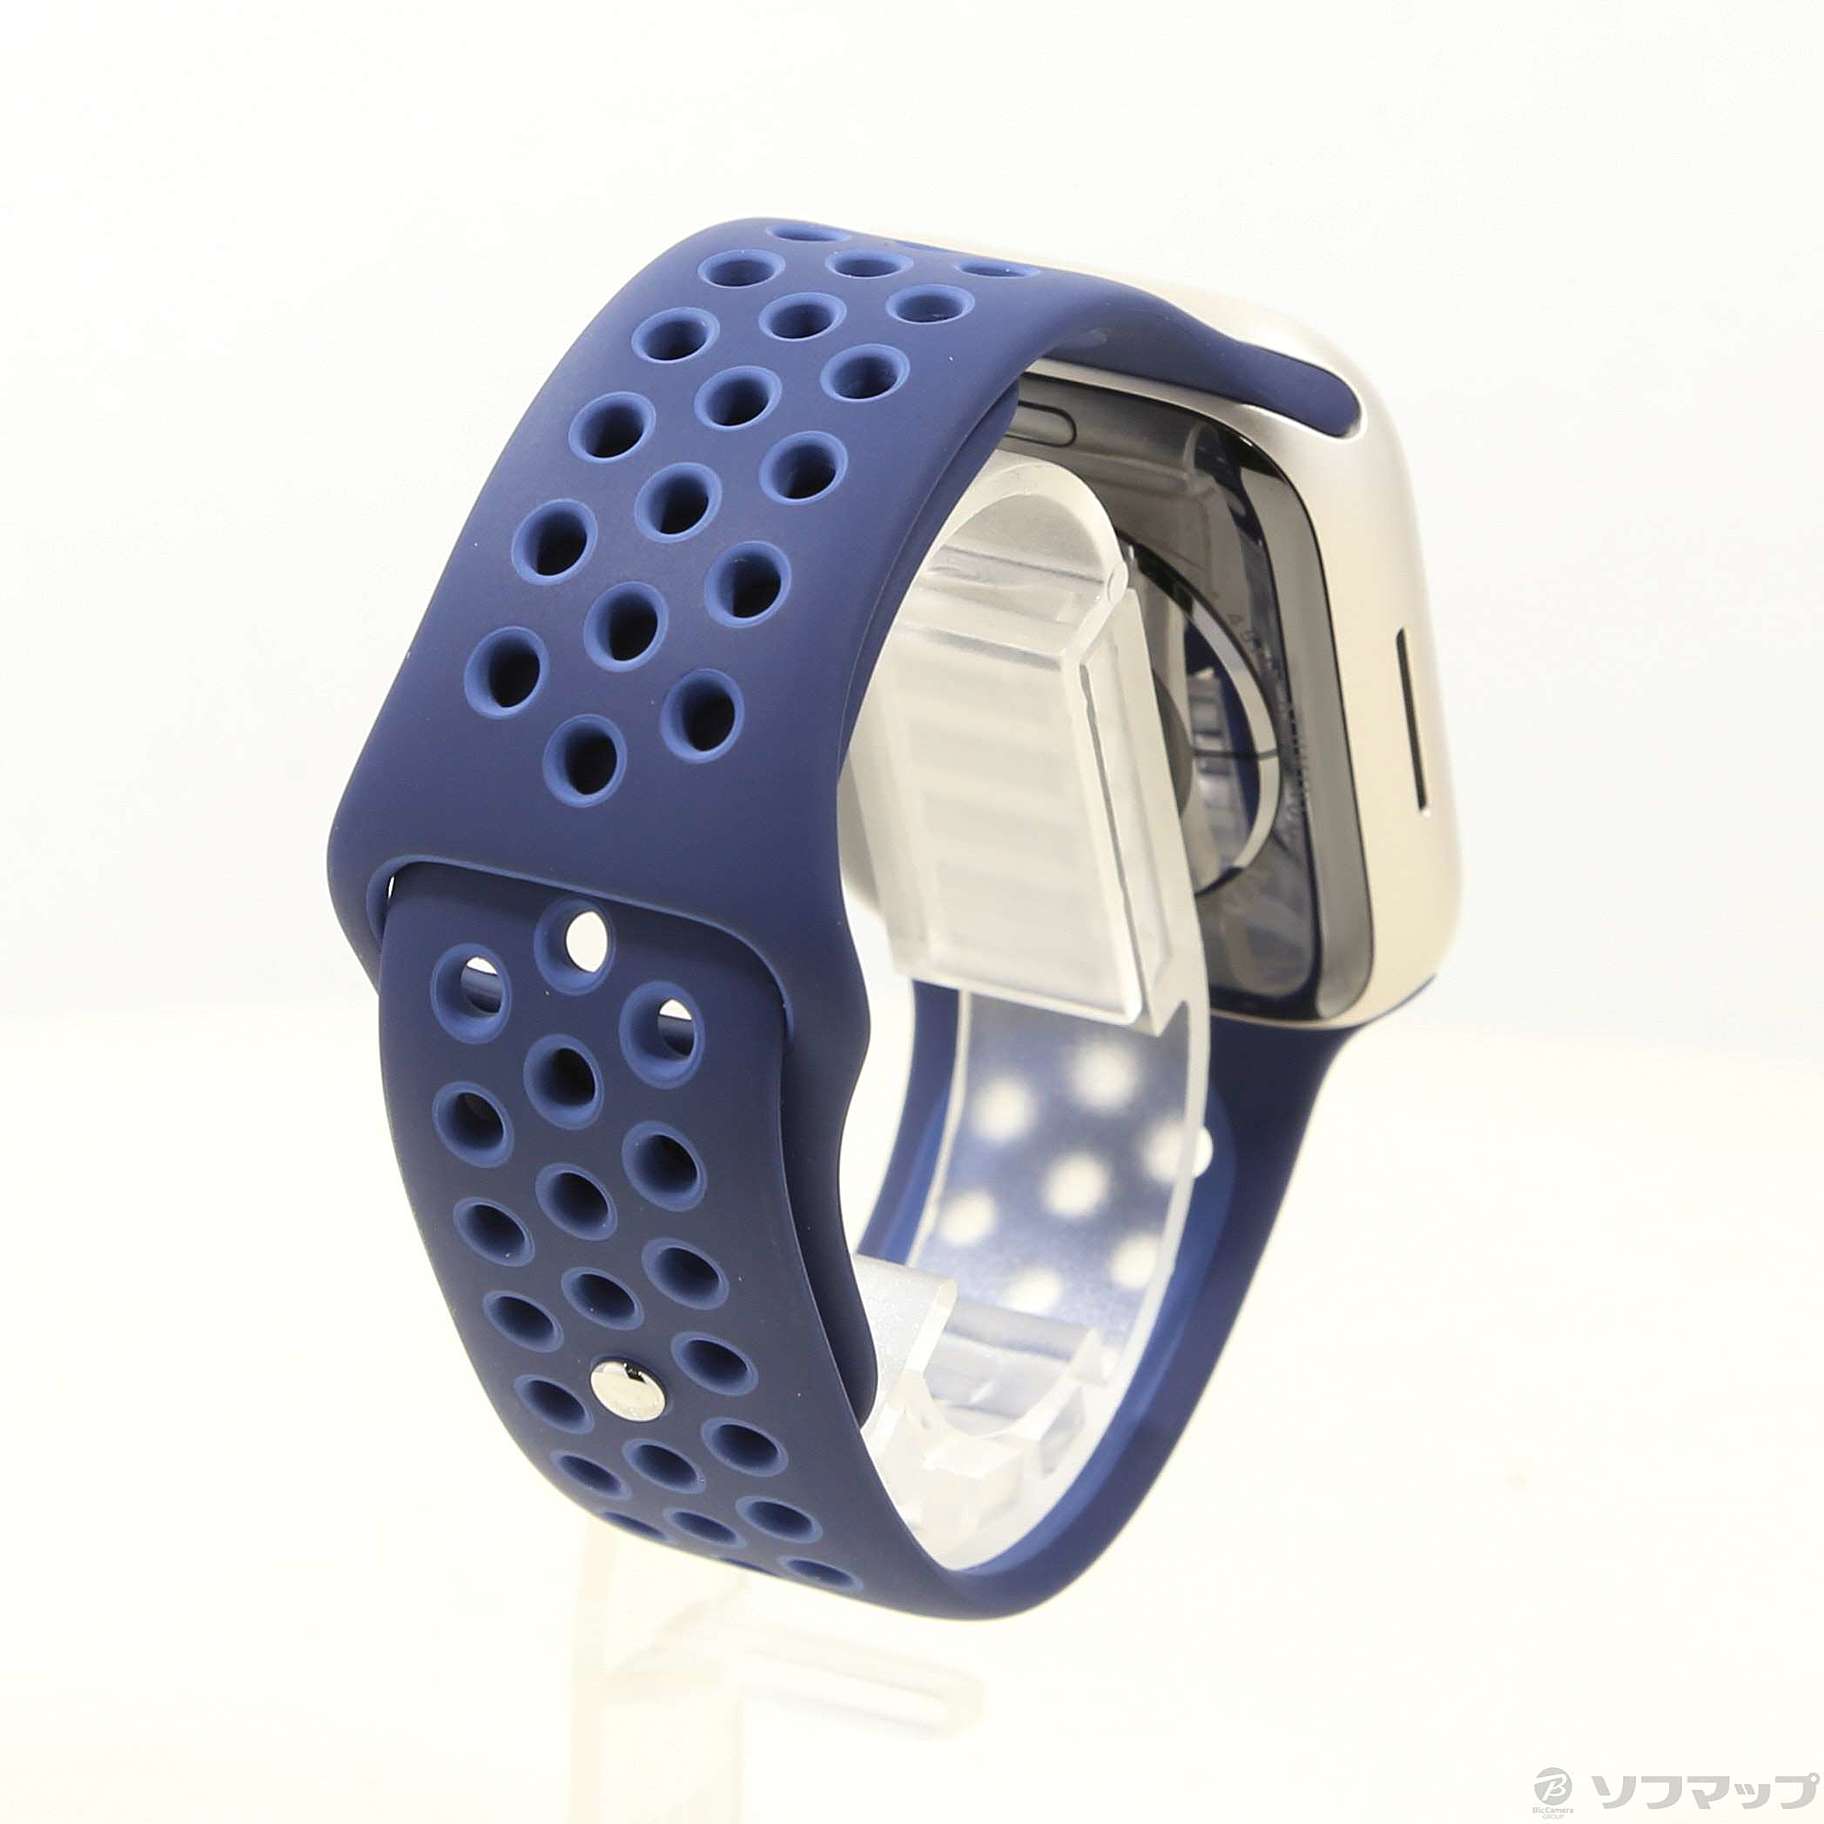 最新作特価即日発送可能Apple Watch 7 45mm ミッドナイト　GPSモデル 時計